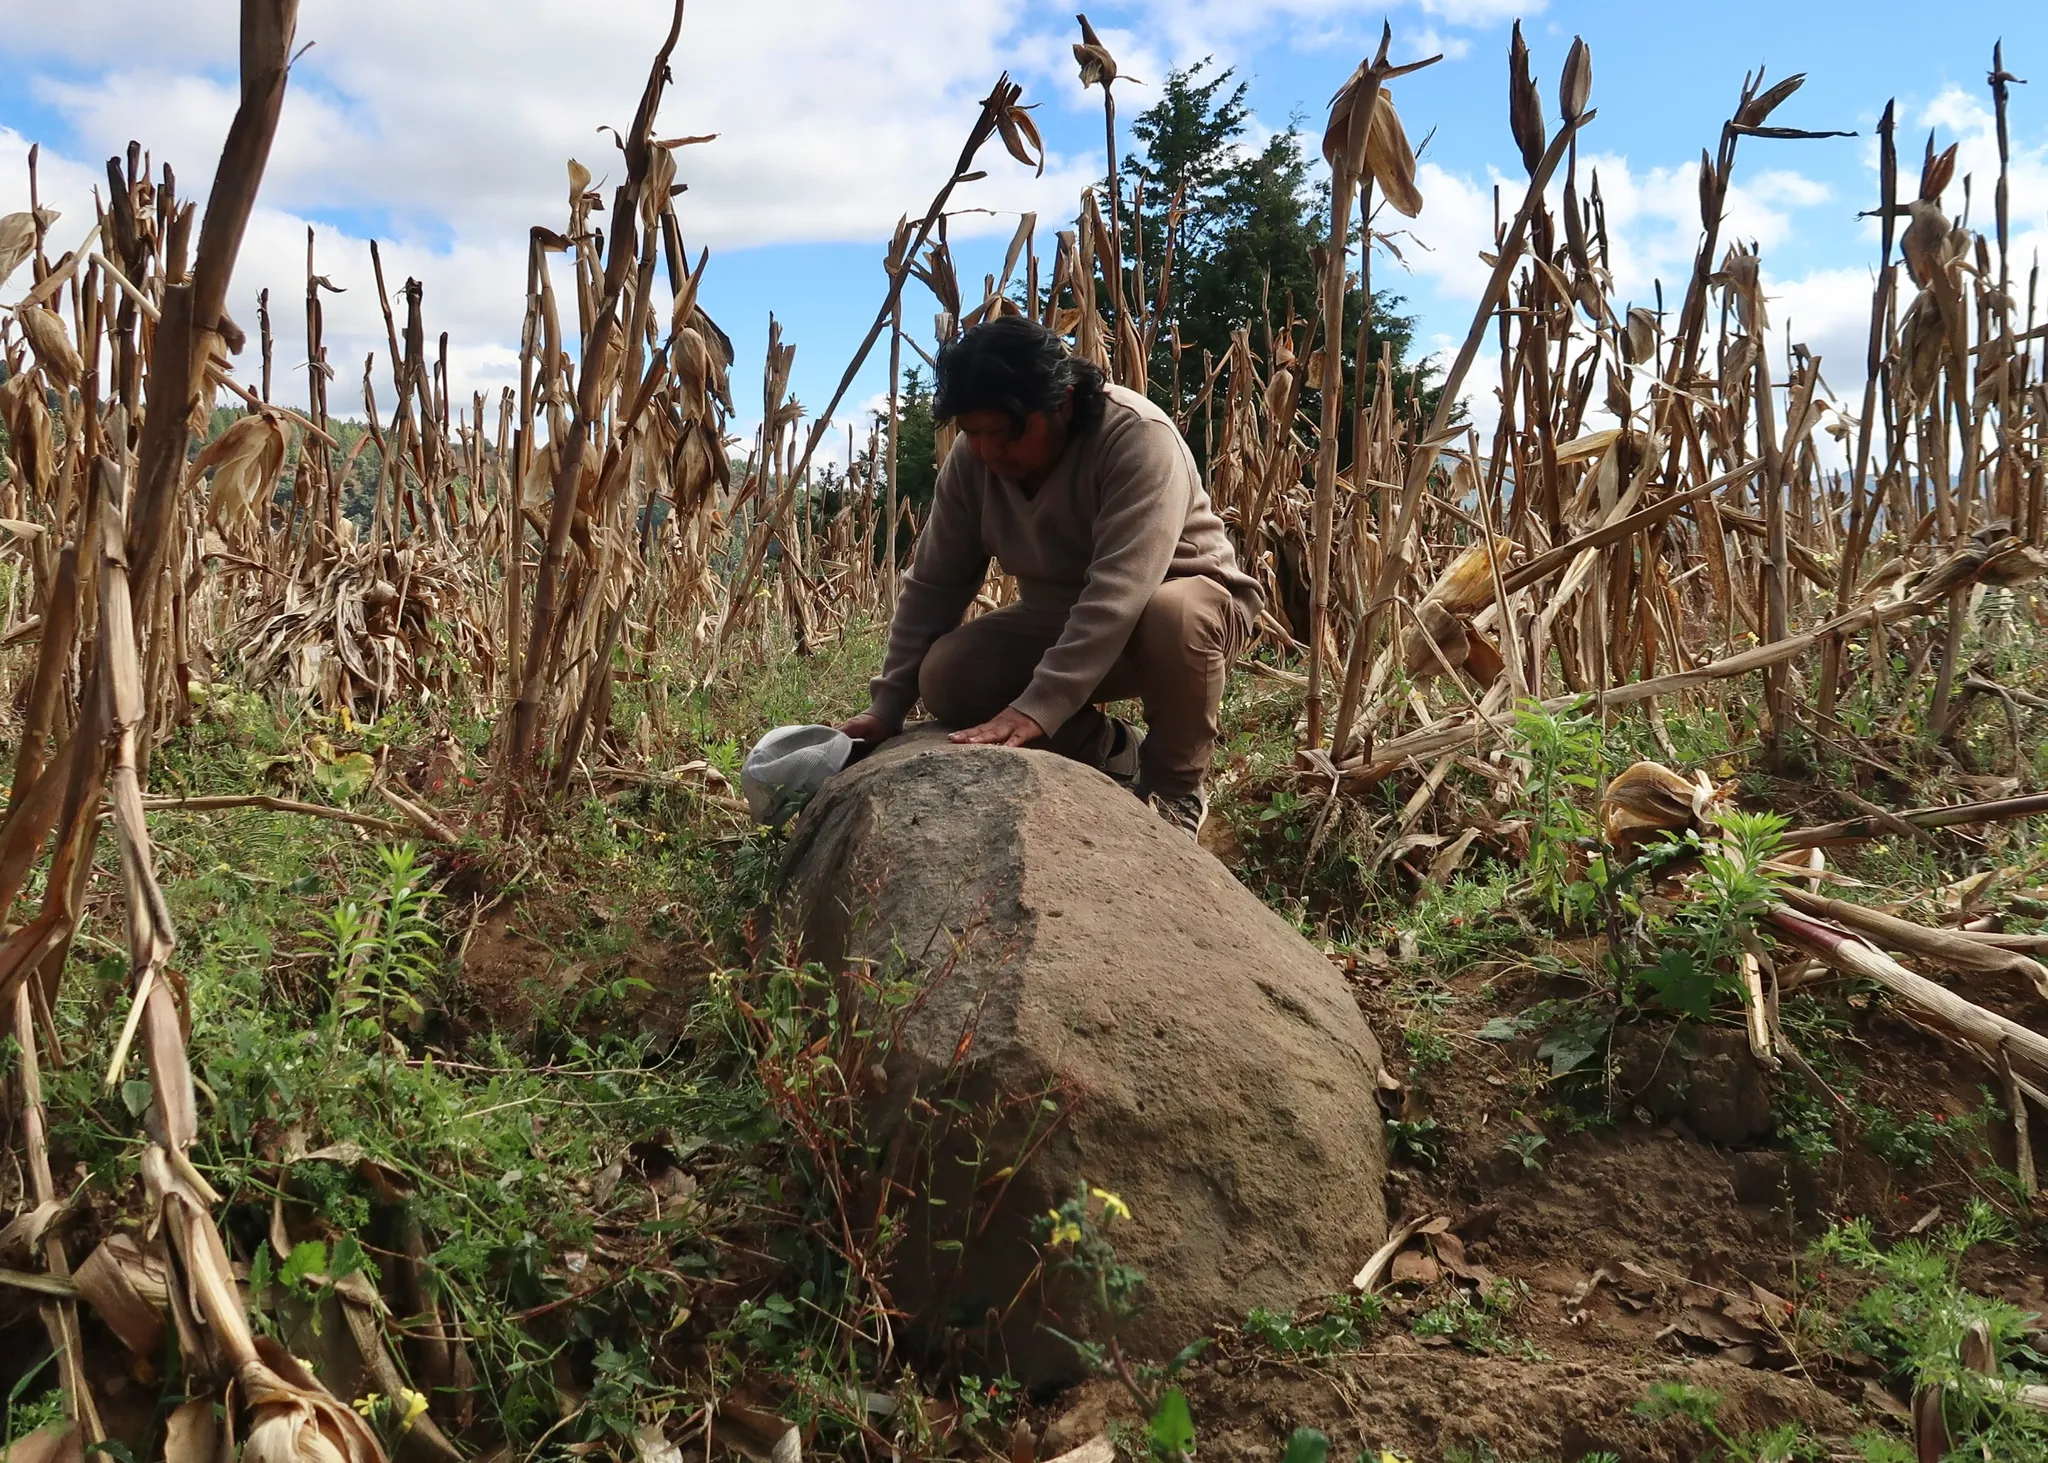 De kunstenaar in een lichtbruin pak stapt op een rots temidden van een droog korenveld